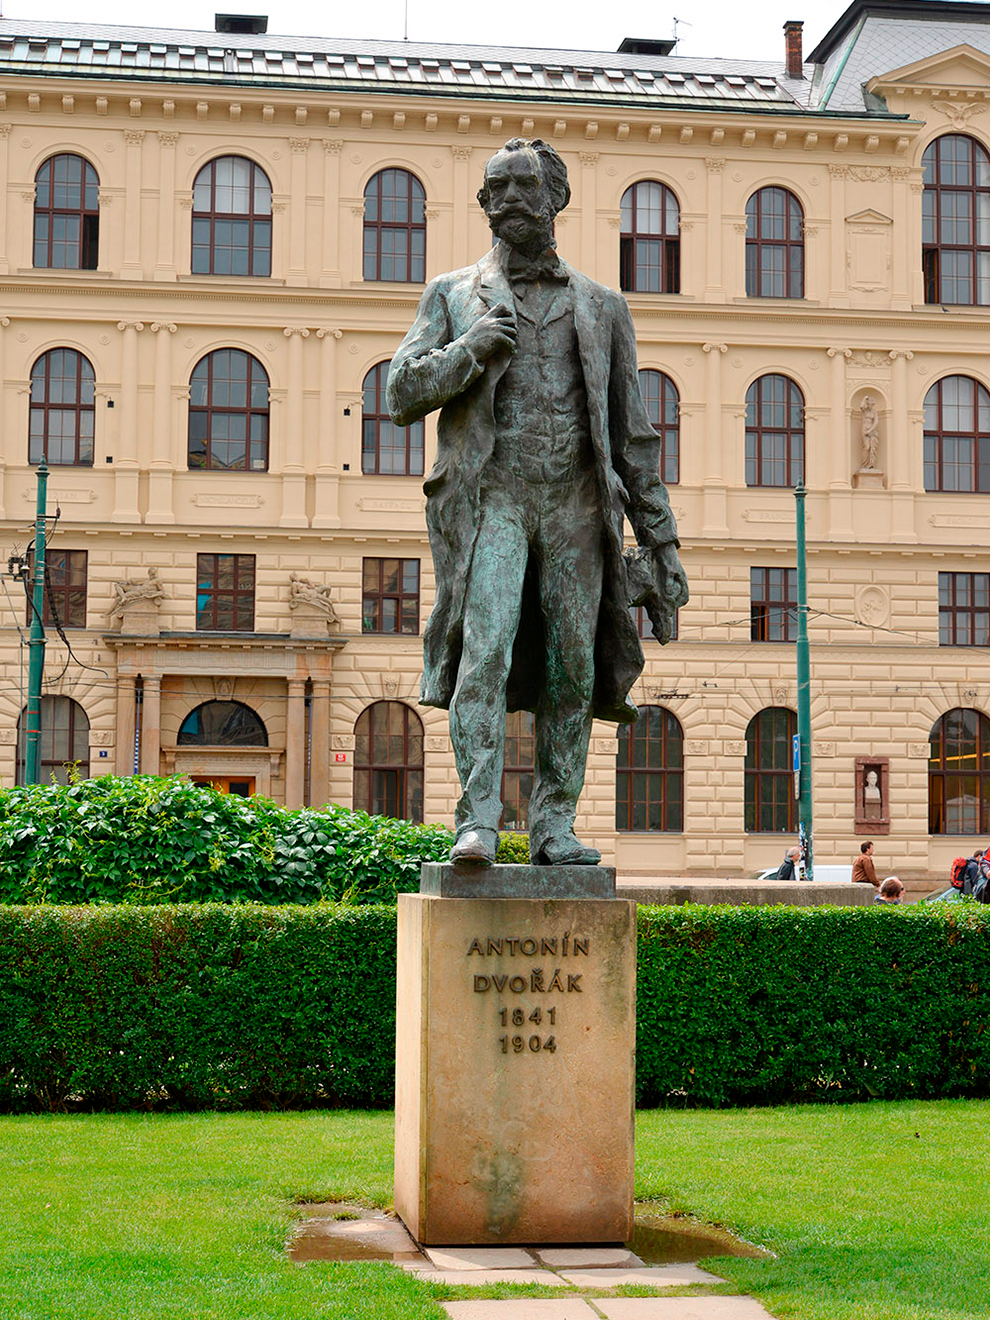 У памятника чешскому композитору Антонину Дворжаку назначают встречи и свидания. Источник:&nbsp;Shutterstock